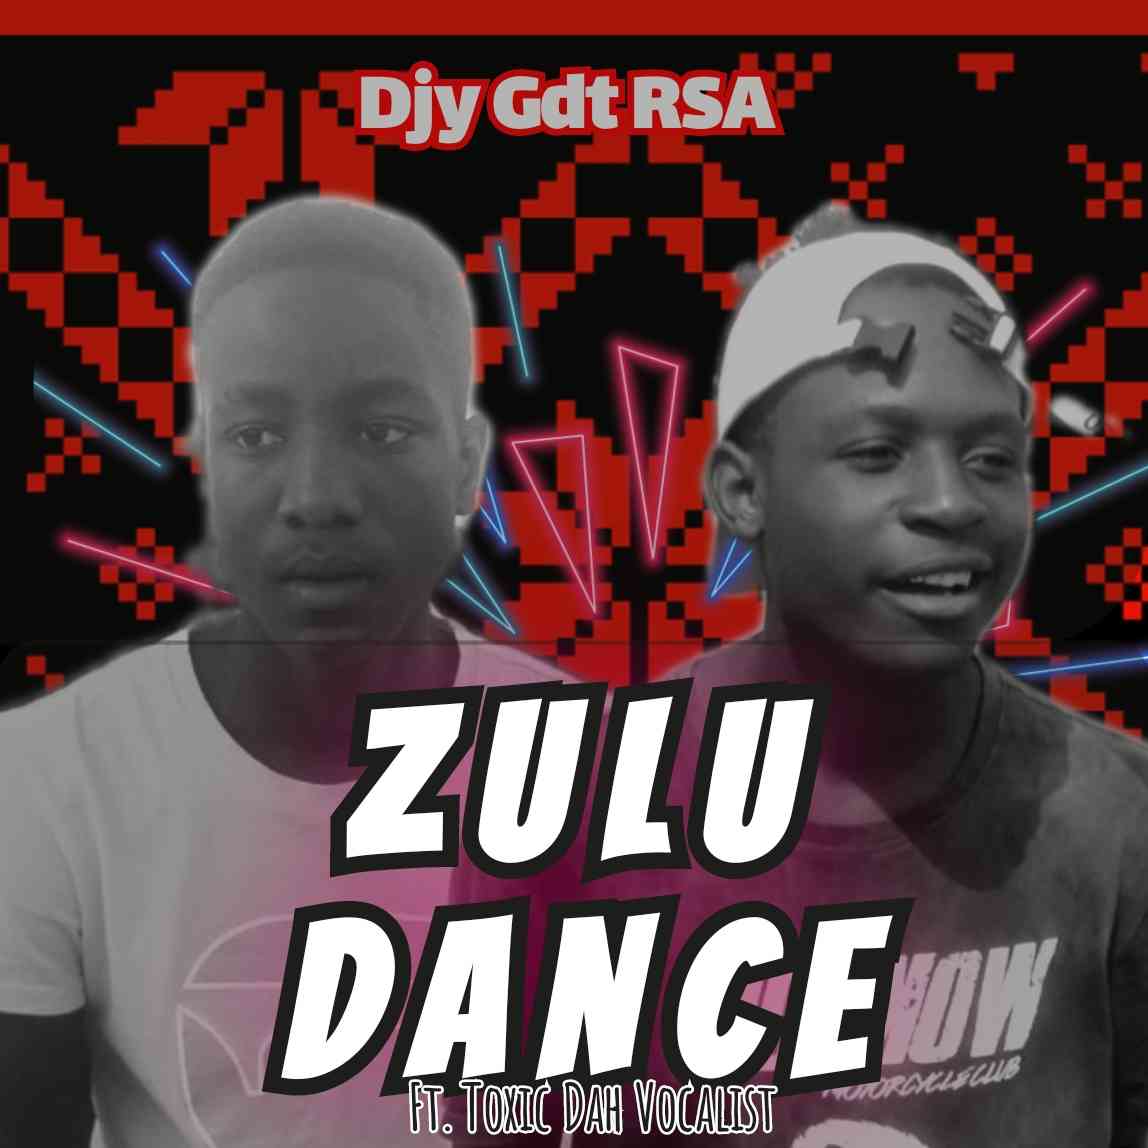 Djy Gft RSA ft. Toxic Dah Vocalist - Zulu Dance